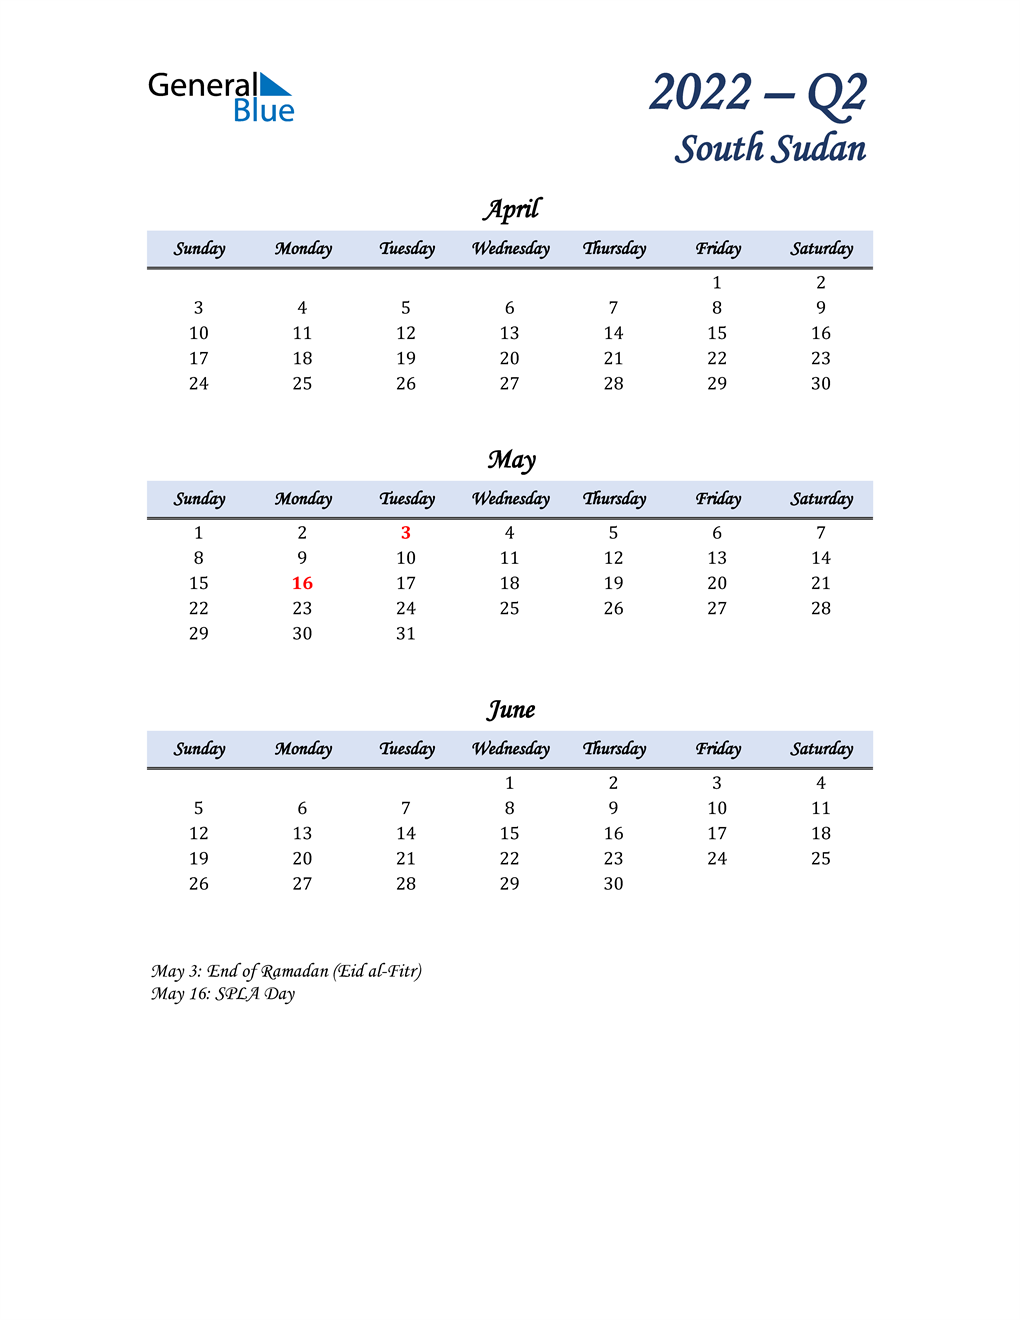  April, May, and June Calendar for South Sudan